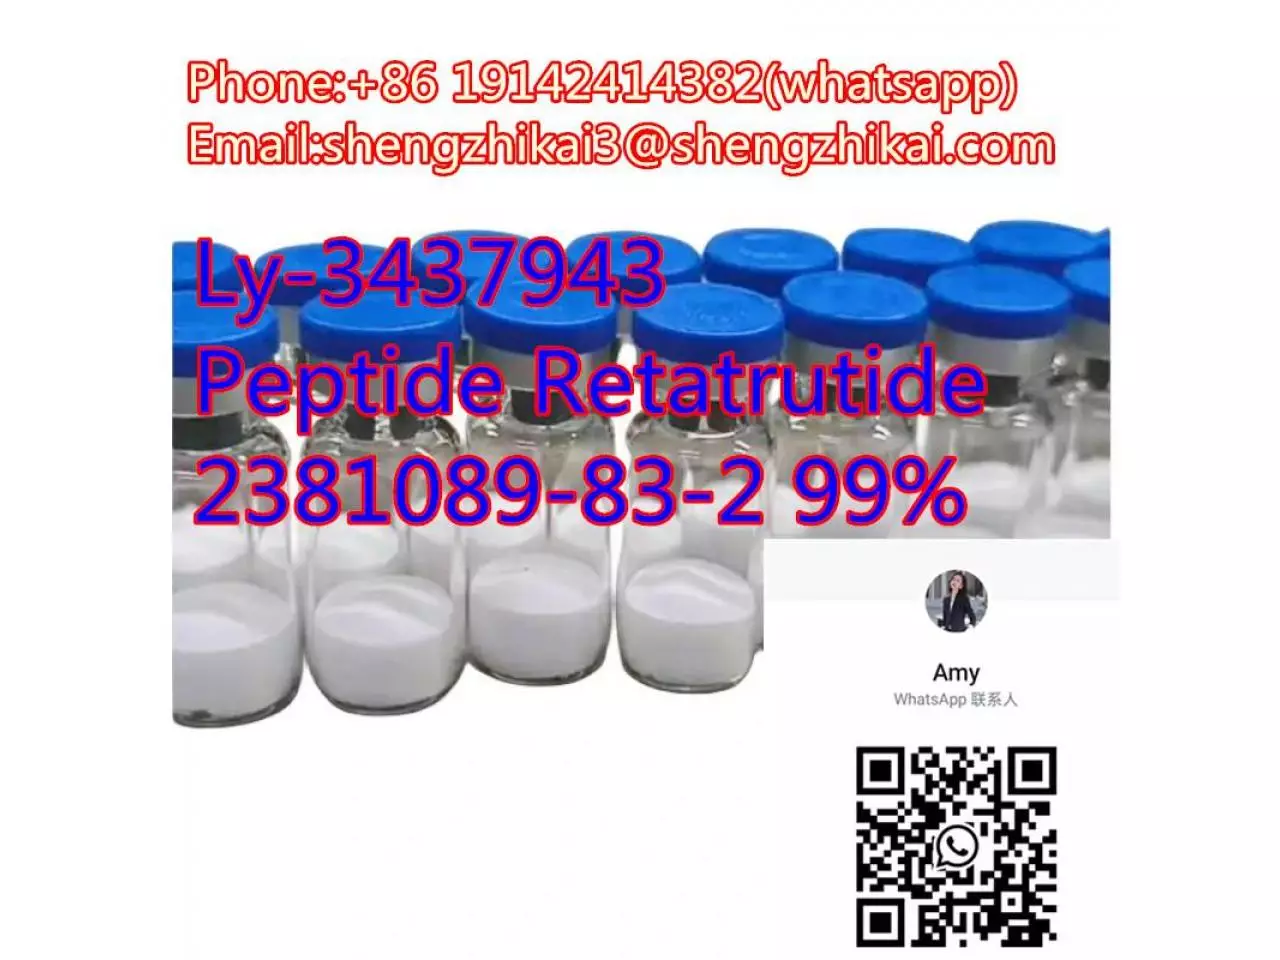 الشركة المصنعة توريد الببتيدات ريتاتروتيد CAS 2381089-83-2 Ly3437943 ريتاتروتيد - 7/10